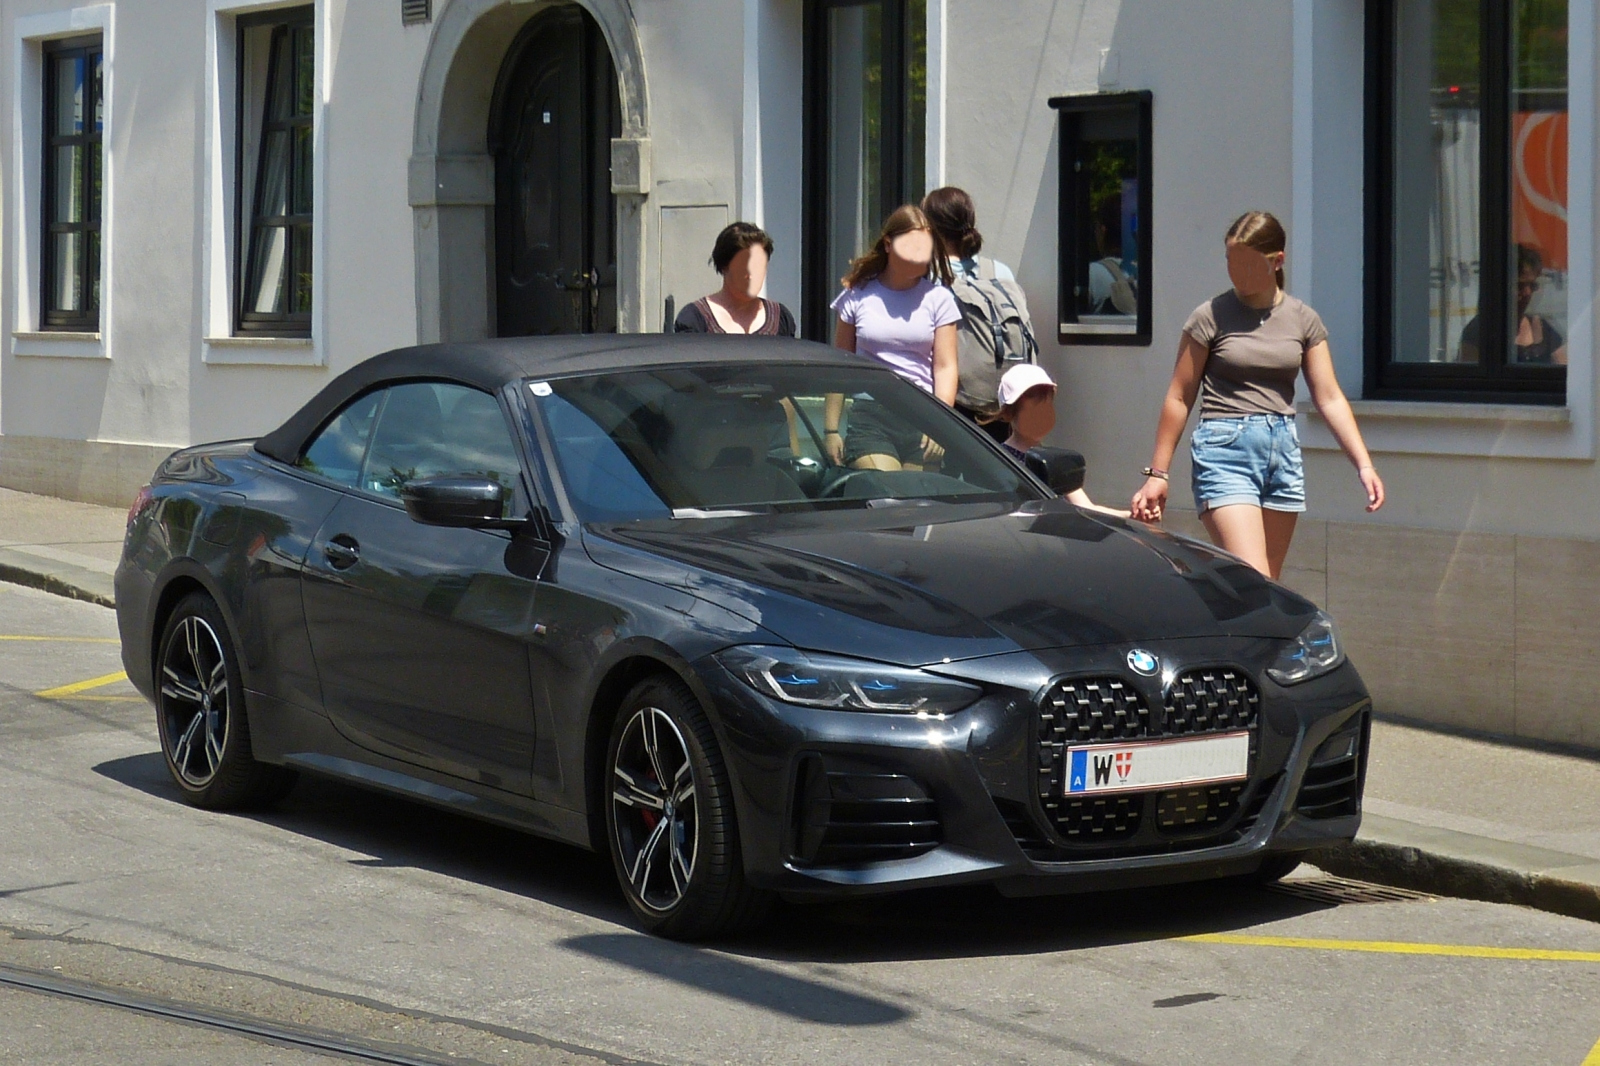 BMW 4er Cabrio, gesehen am Straenrand. 06.2023